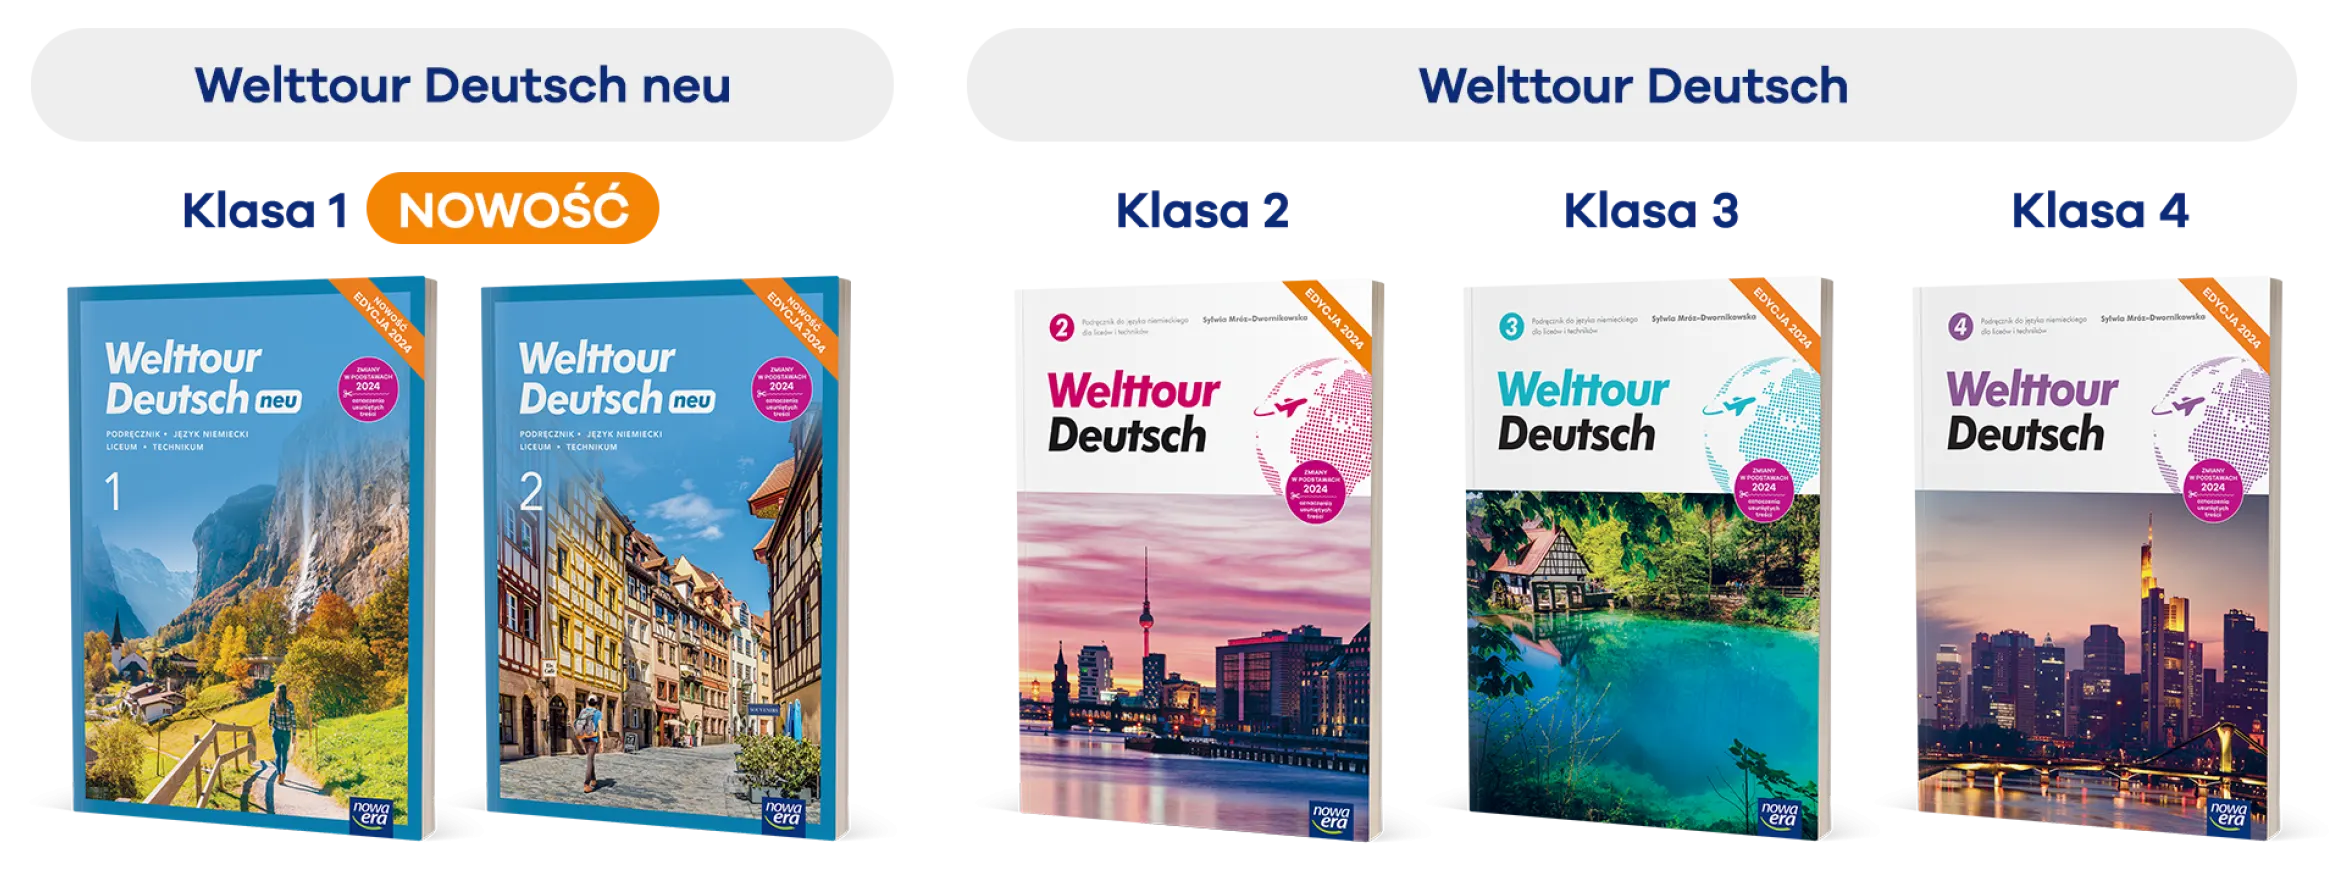 Seria Welttour Deutsch neu